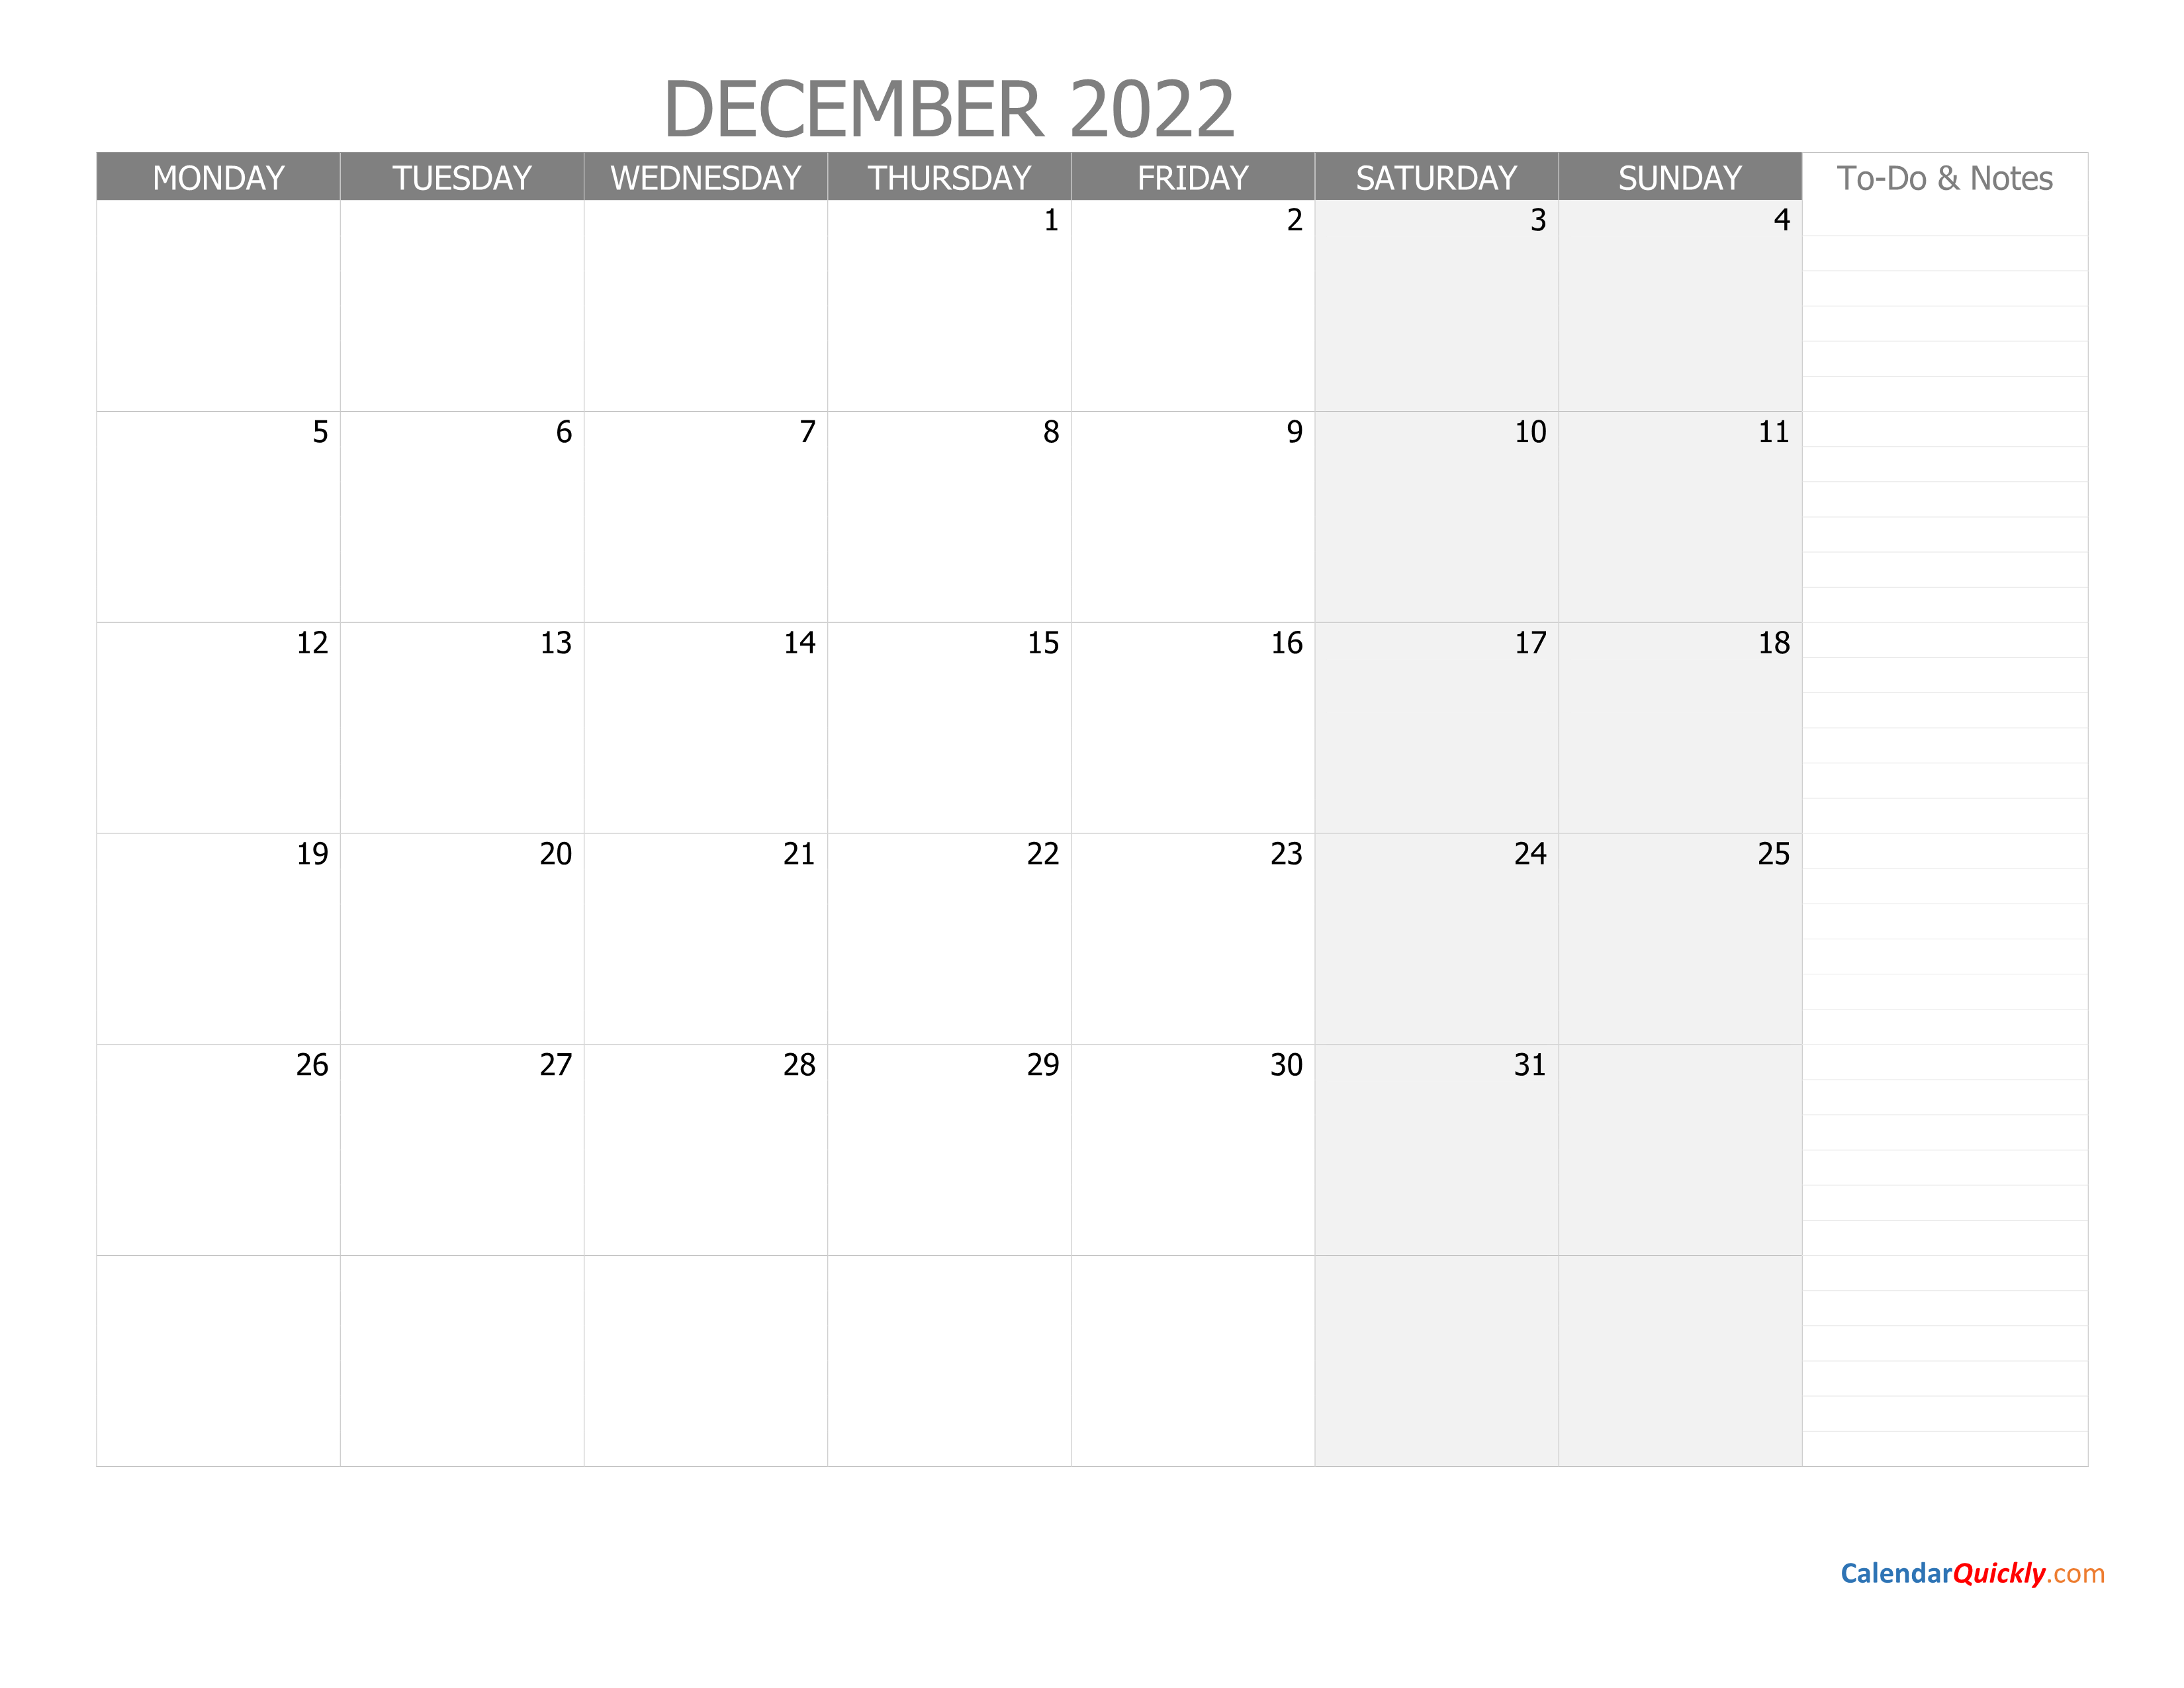 december-monday-calendar-2022-with-notes-calendar-quickly